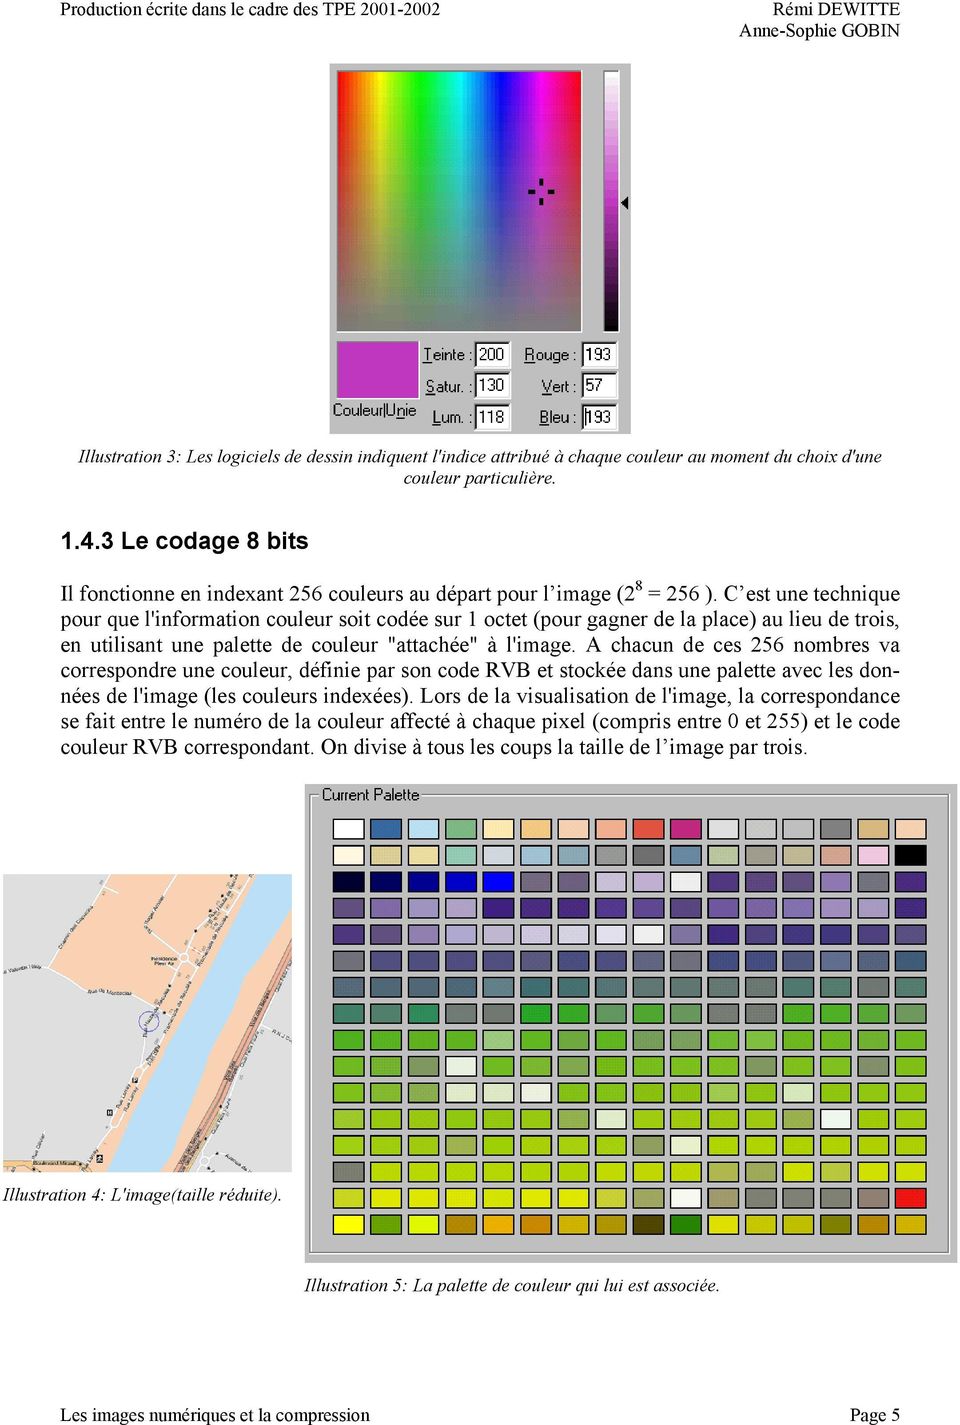 C est une technique pour que l'information couleur soit codée sur 1 octet (pour gagner de la place) au lieu de trois, en utilisant une palette de couleur "attachée" à l'image.